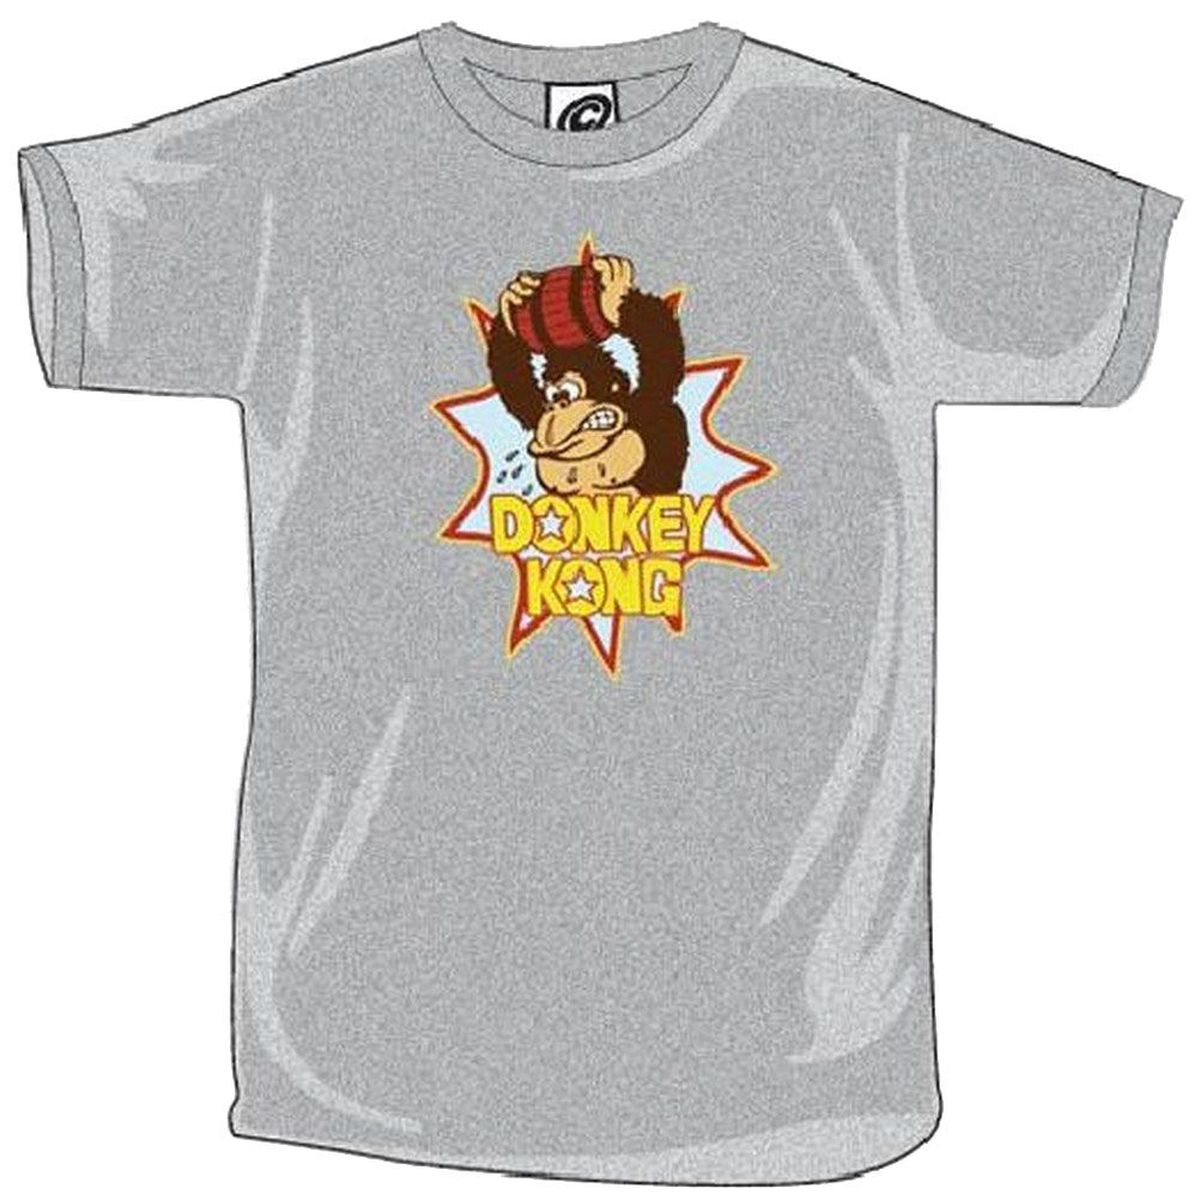 T-shirt Nintendo Donkey Kong gris chin